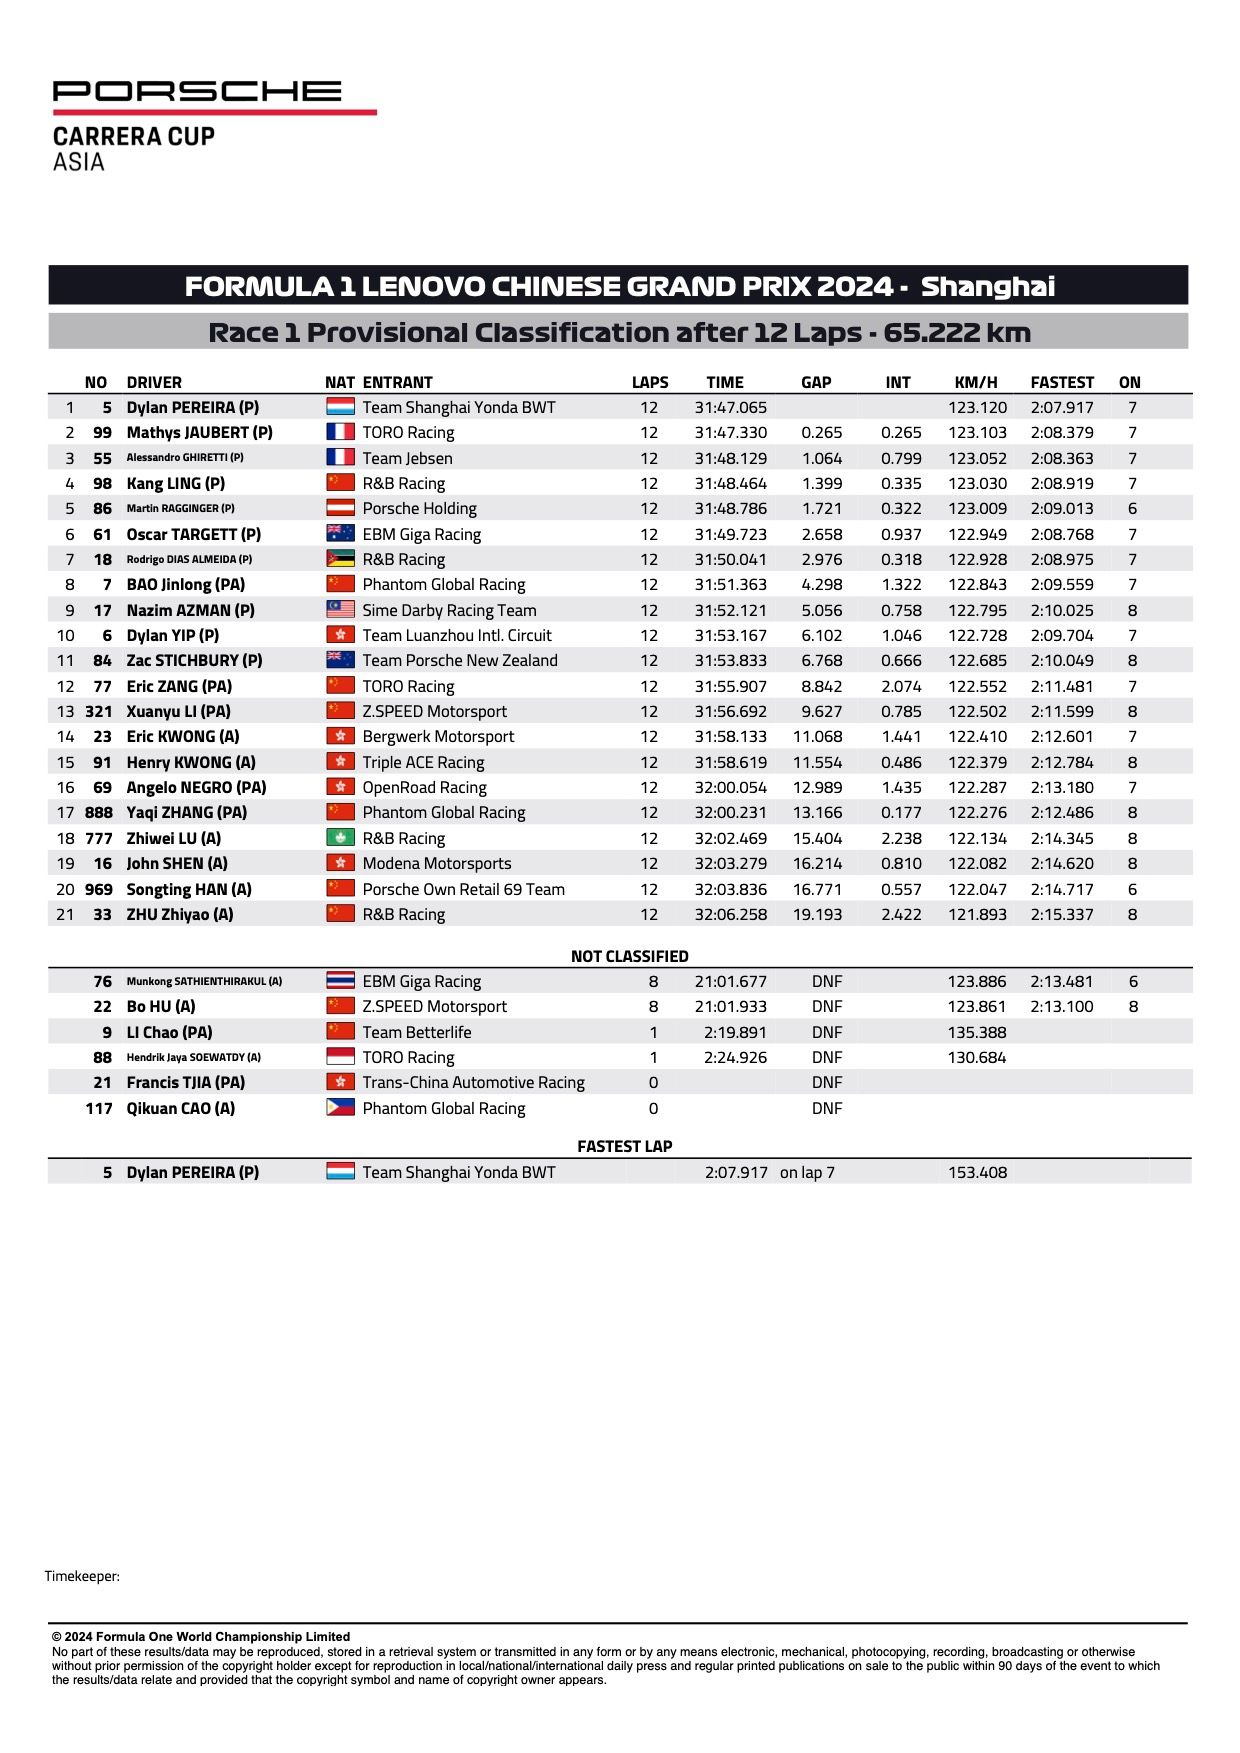 Resultados detallados de las rondas 1 y 2 de la carrera 1 de la Porsche Carrera Cup Asia 2024 Shanghai